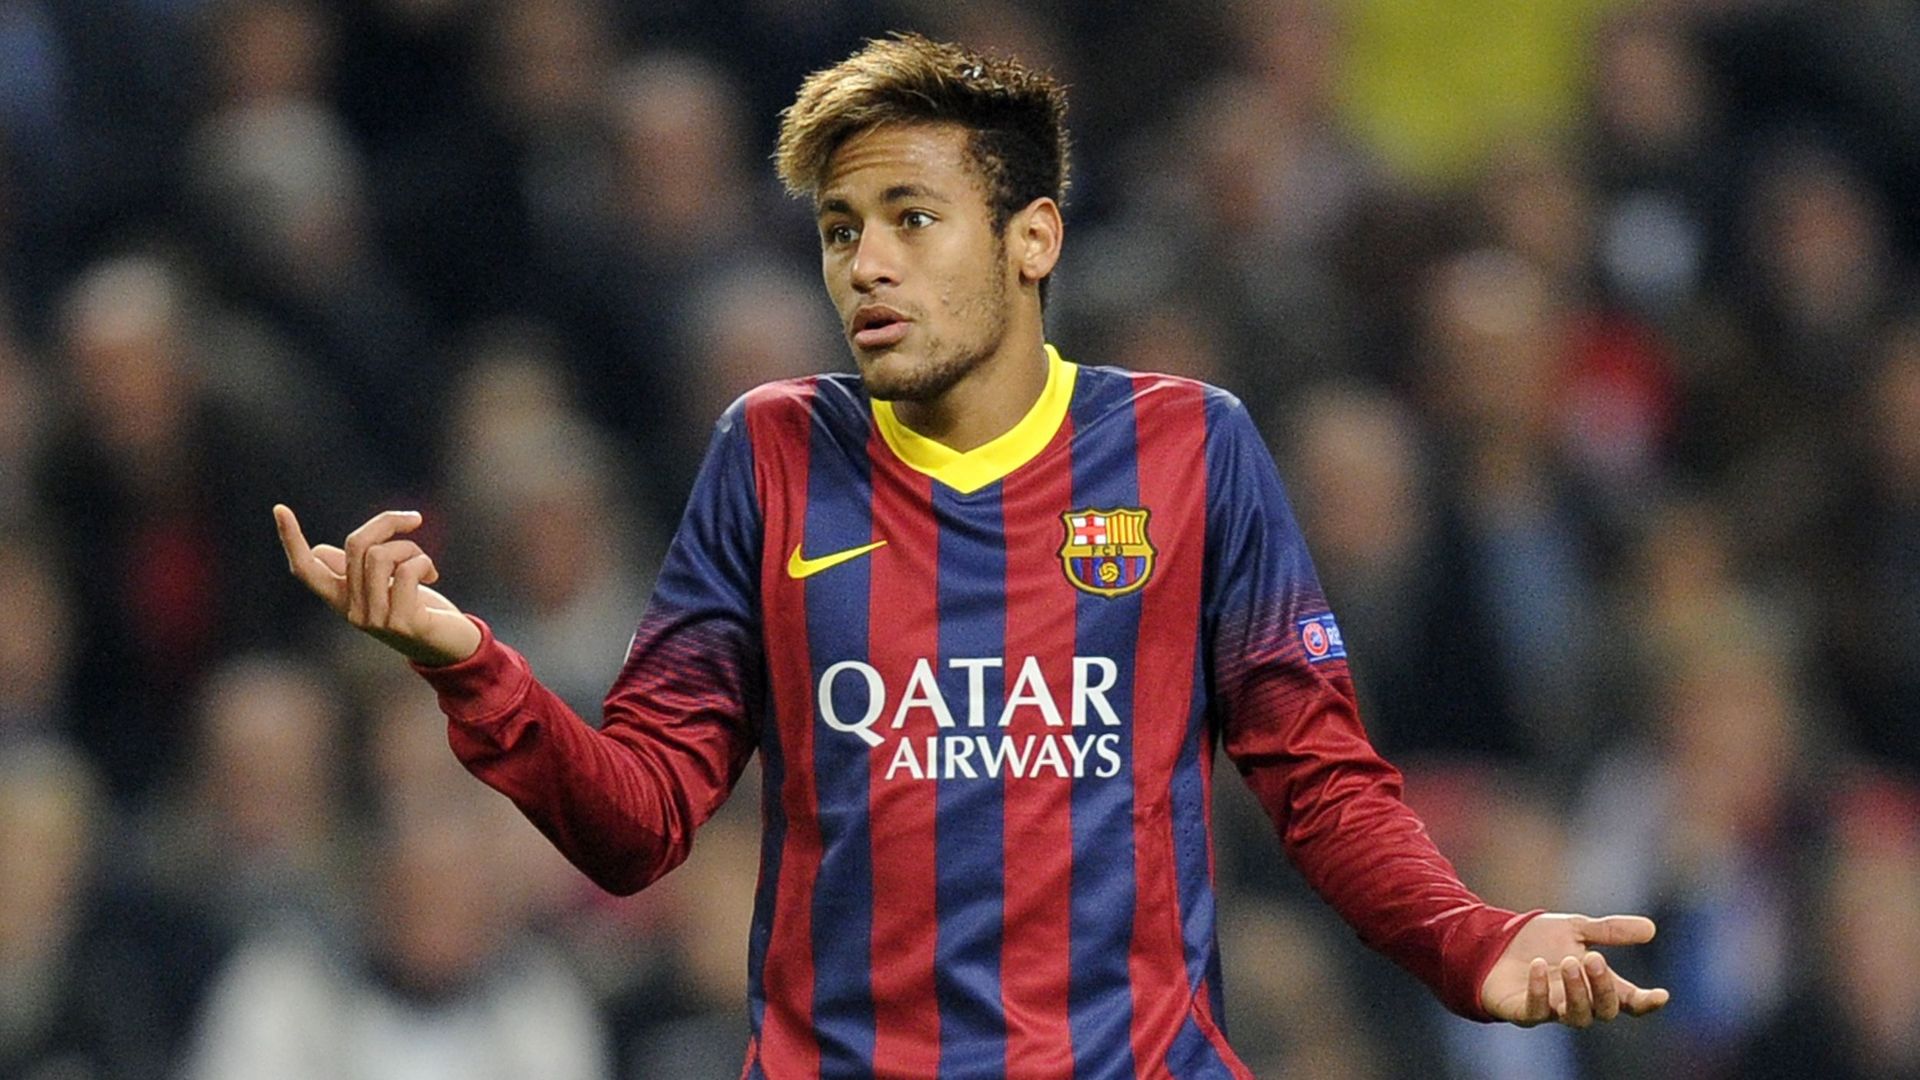 Neymar sous le maillot de Barcelone : son transfert depuis Santos a été réalisé dans les règles, selon le TAS